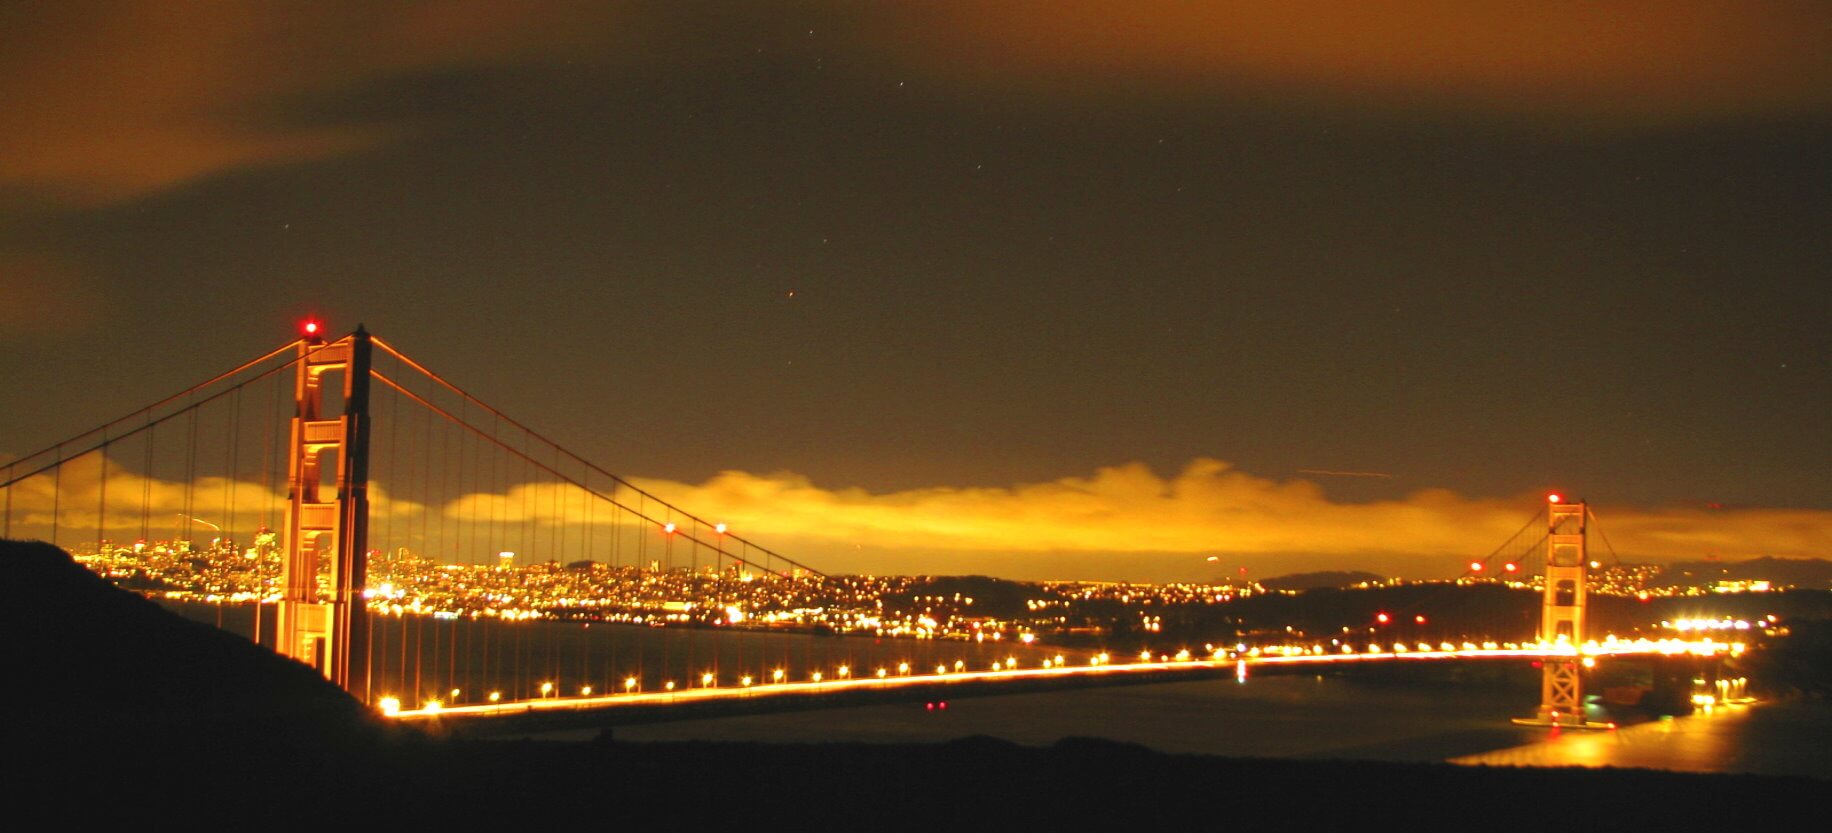 San Francisco Night Tour Abendlichter Sightseeing nach Einbruch der Dunkelheit in der Stadt an der Bucht